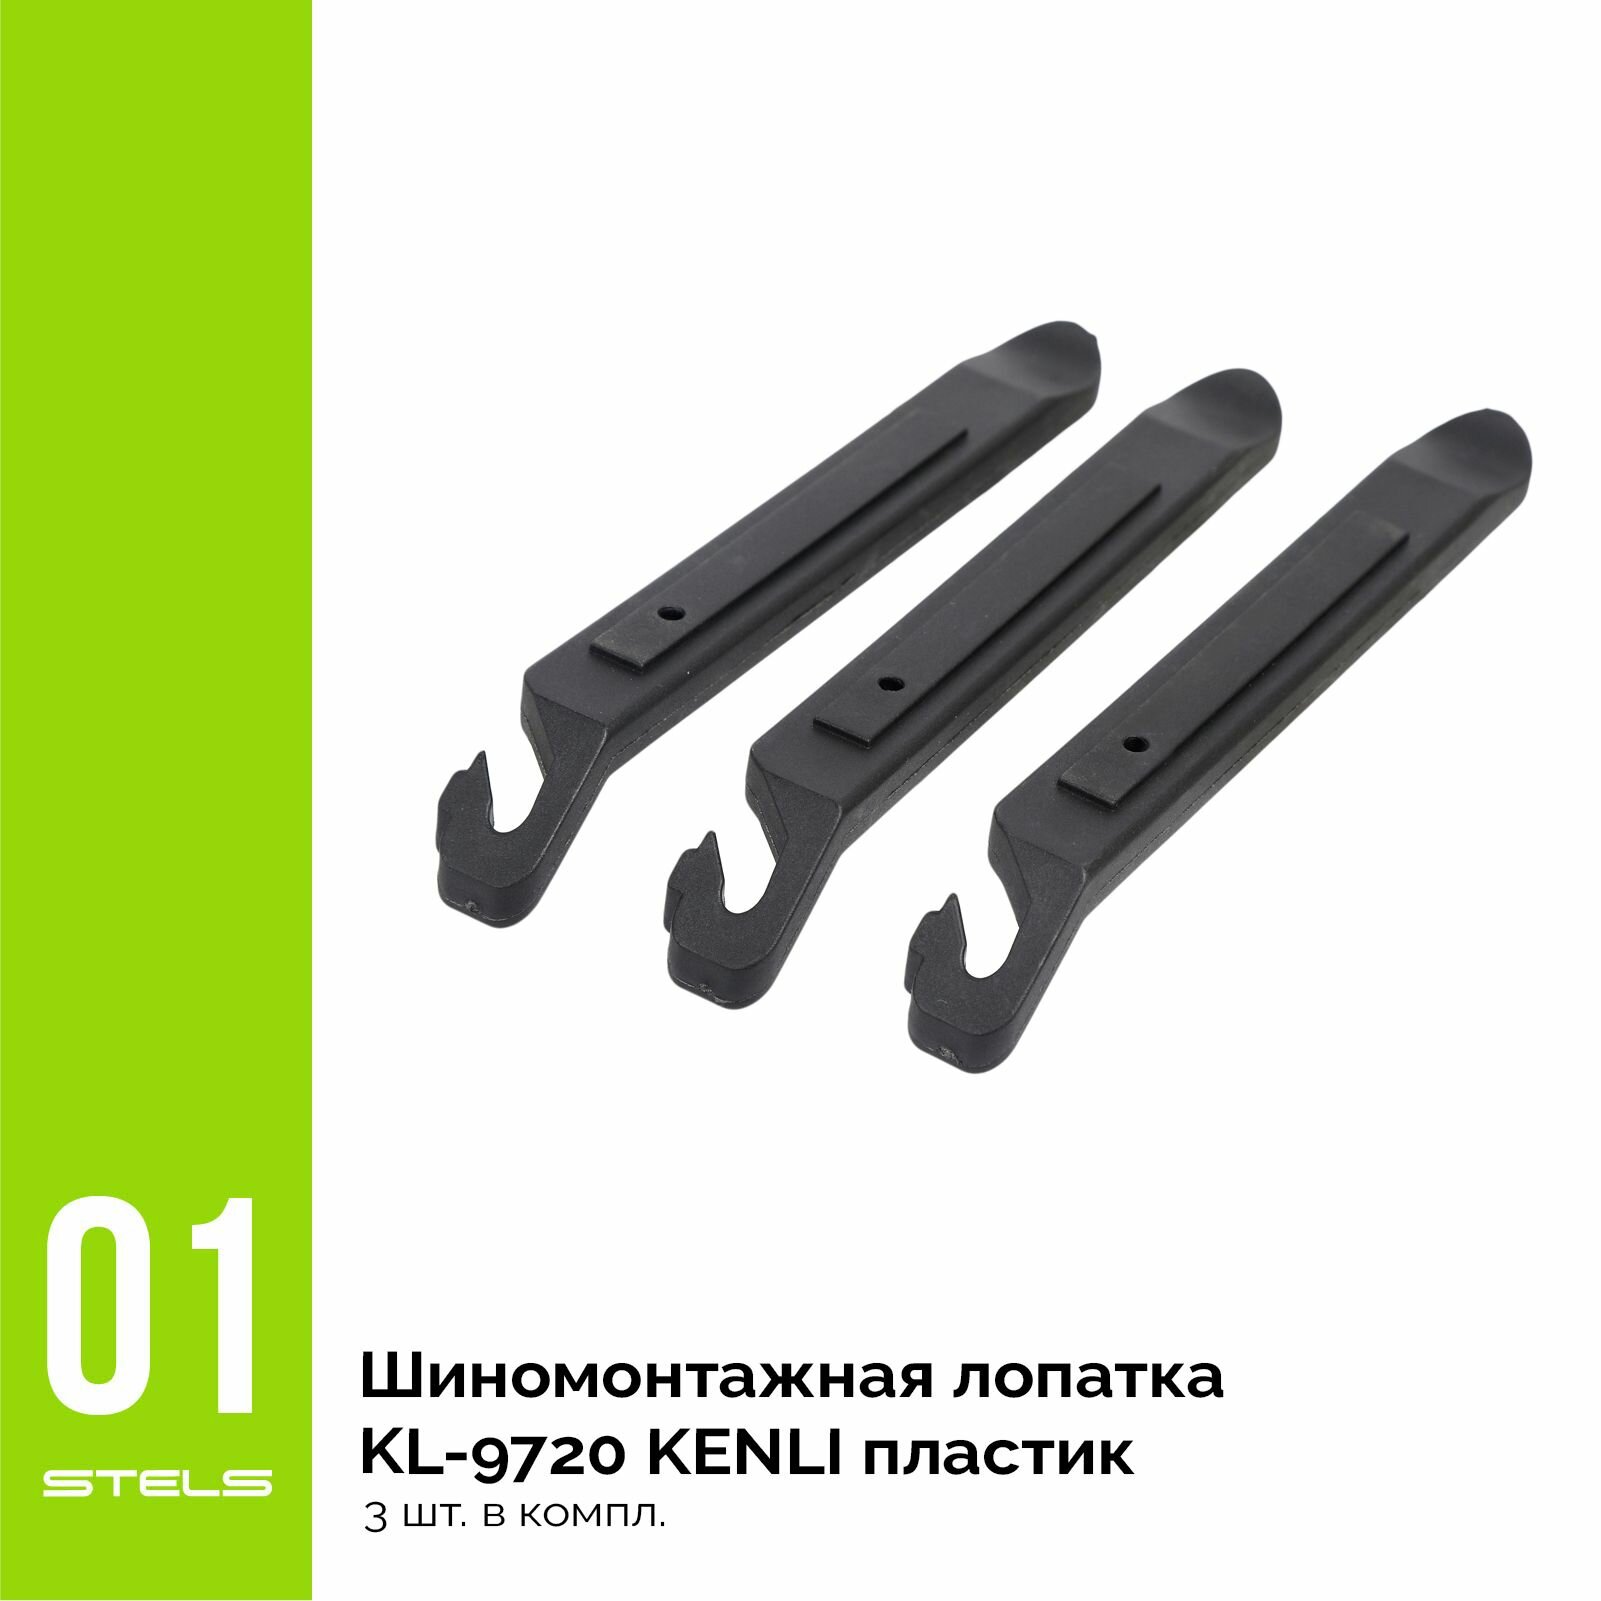 Шиномонтажная лопатка KL-9720 KENLI пластик 3 шт. в комплекте